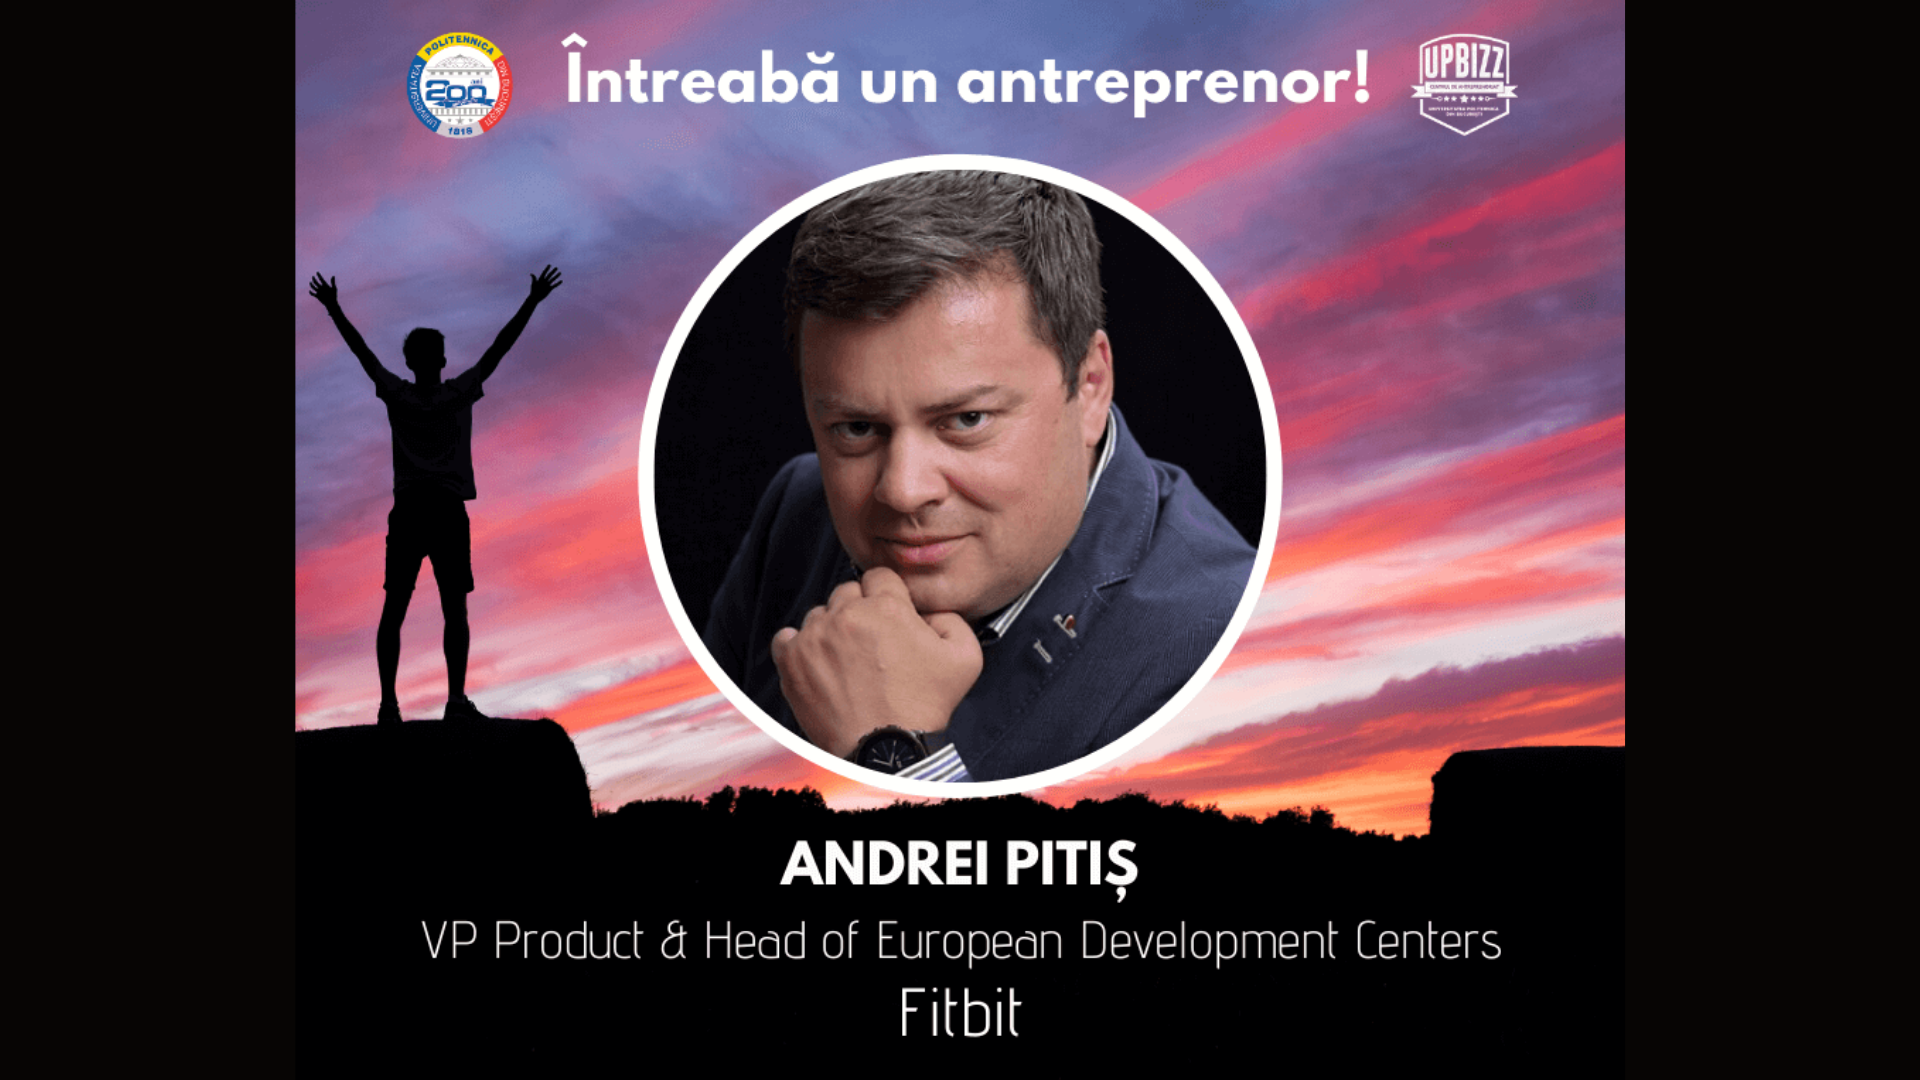 Interviu Centrul de Antreprenoriat UPBizz – Andrei Pitiș / Fitbit